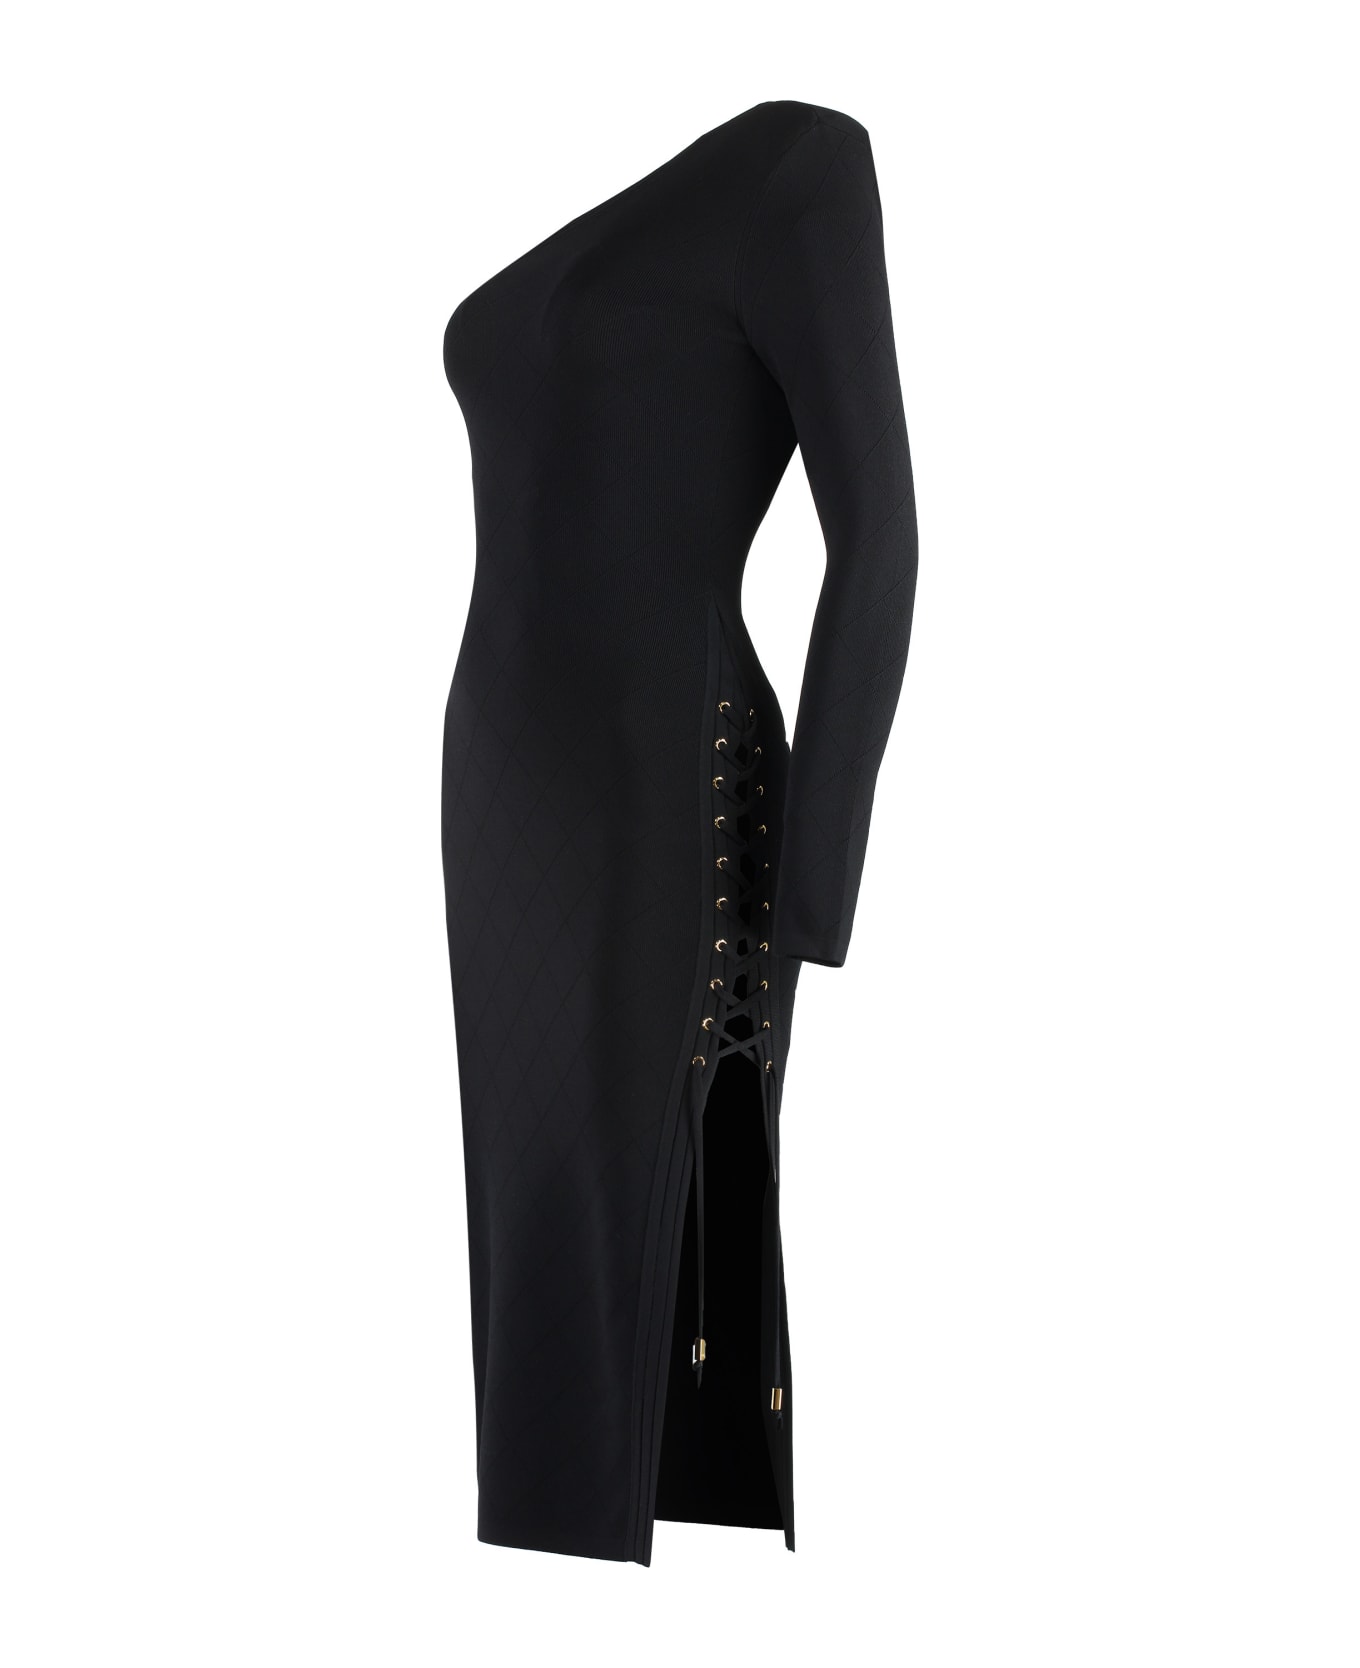 Elisabetta Franchi One Shoulder Dress - black